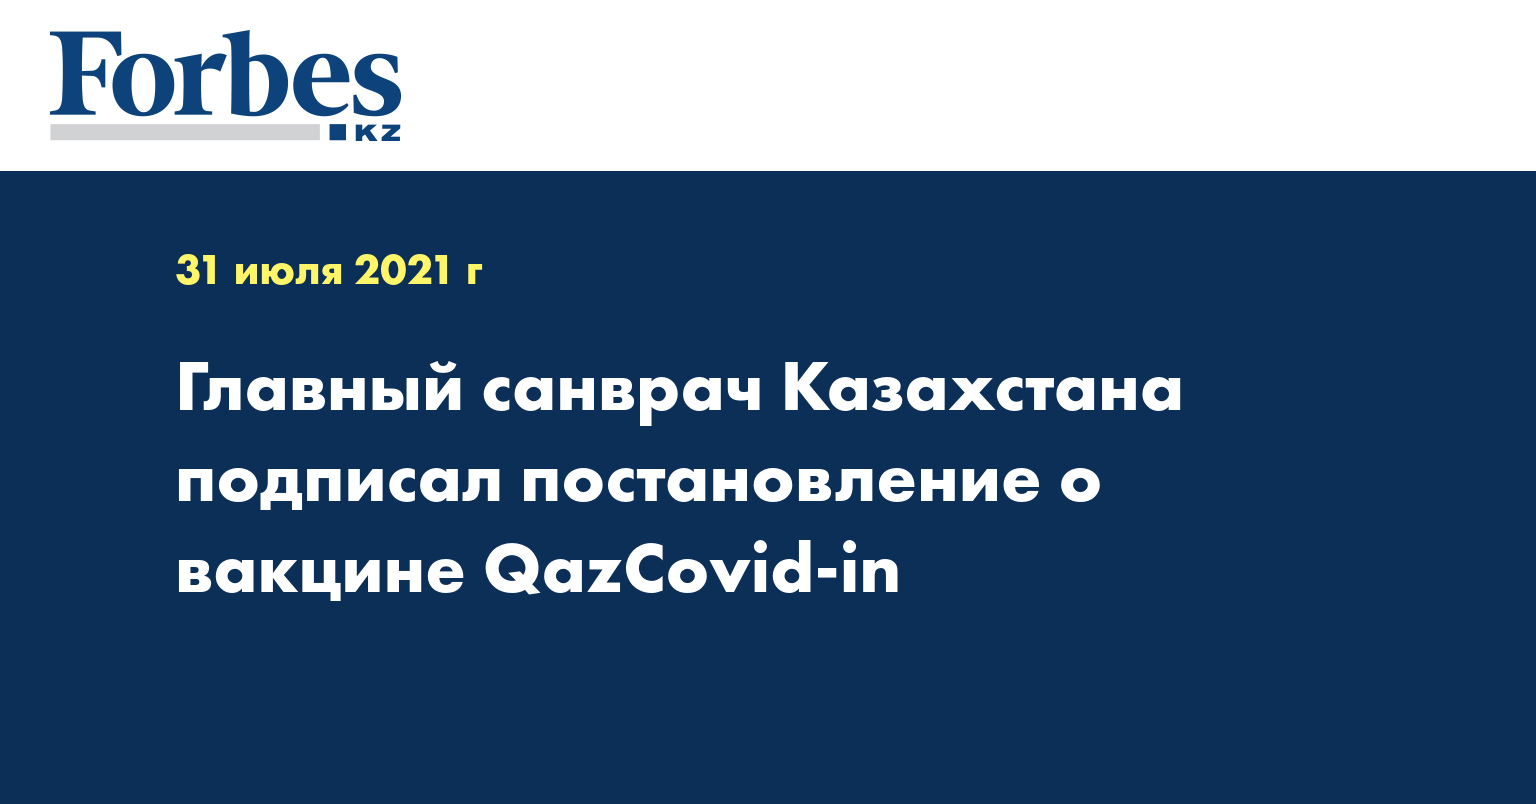 Главный санврач Казахстана подписал постановление о вакцине QazCovid-in